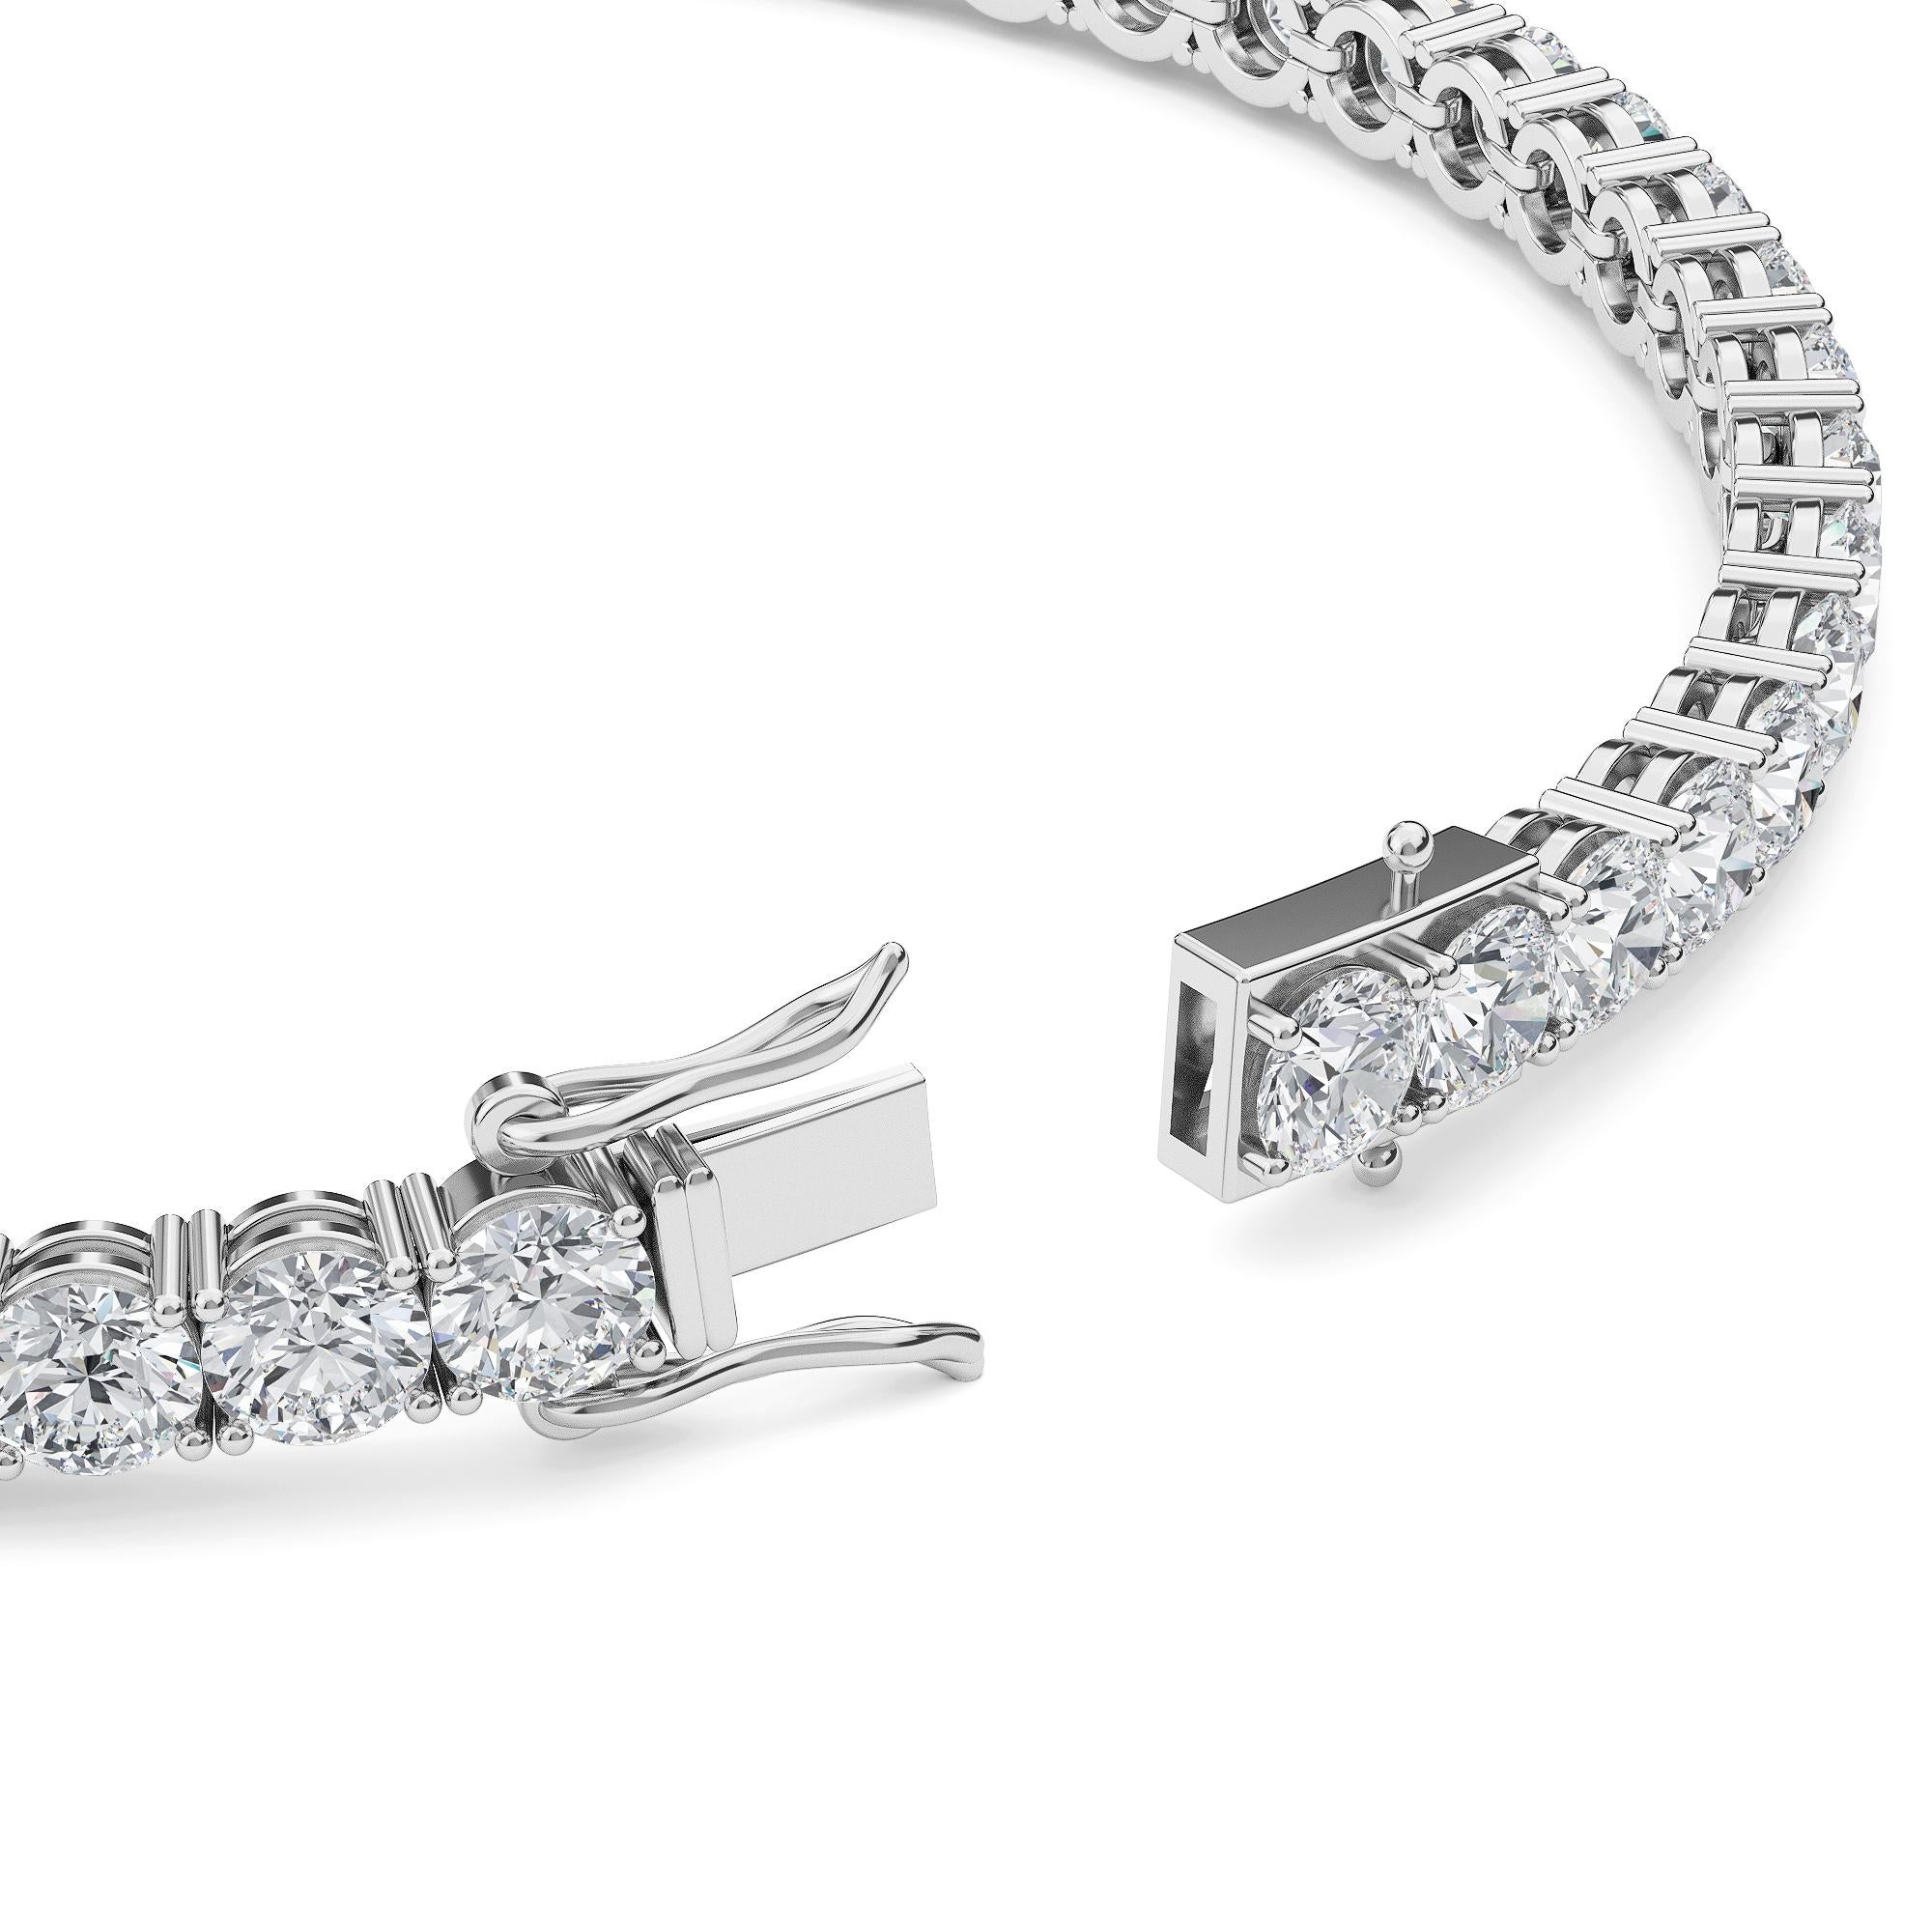 Faites briller votre tenue avec ce bracelet de tennis qui présente des diamants naturels ronds magnifiquement assortis. L'élégance pour chaque instant. 

DÉTAILS MÉTALLIQUES : or 18K l
DÉTAILS DU DIAMANT : Naturel, d'origine éthique &, sans